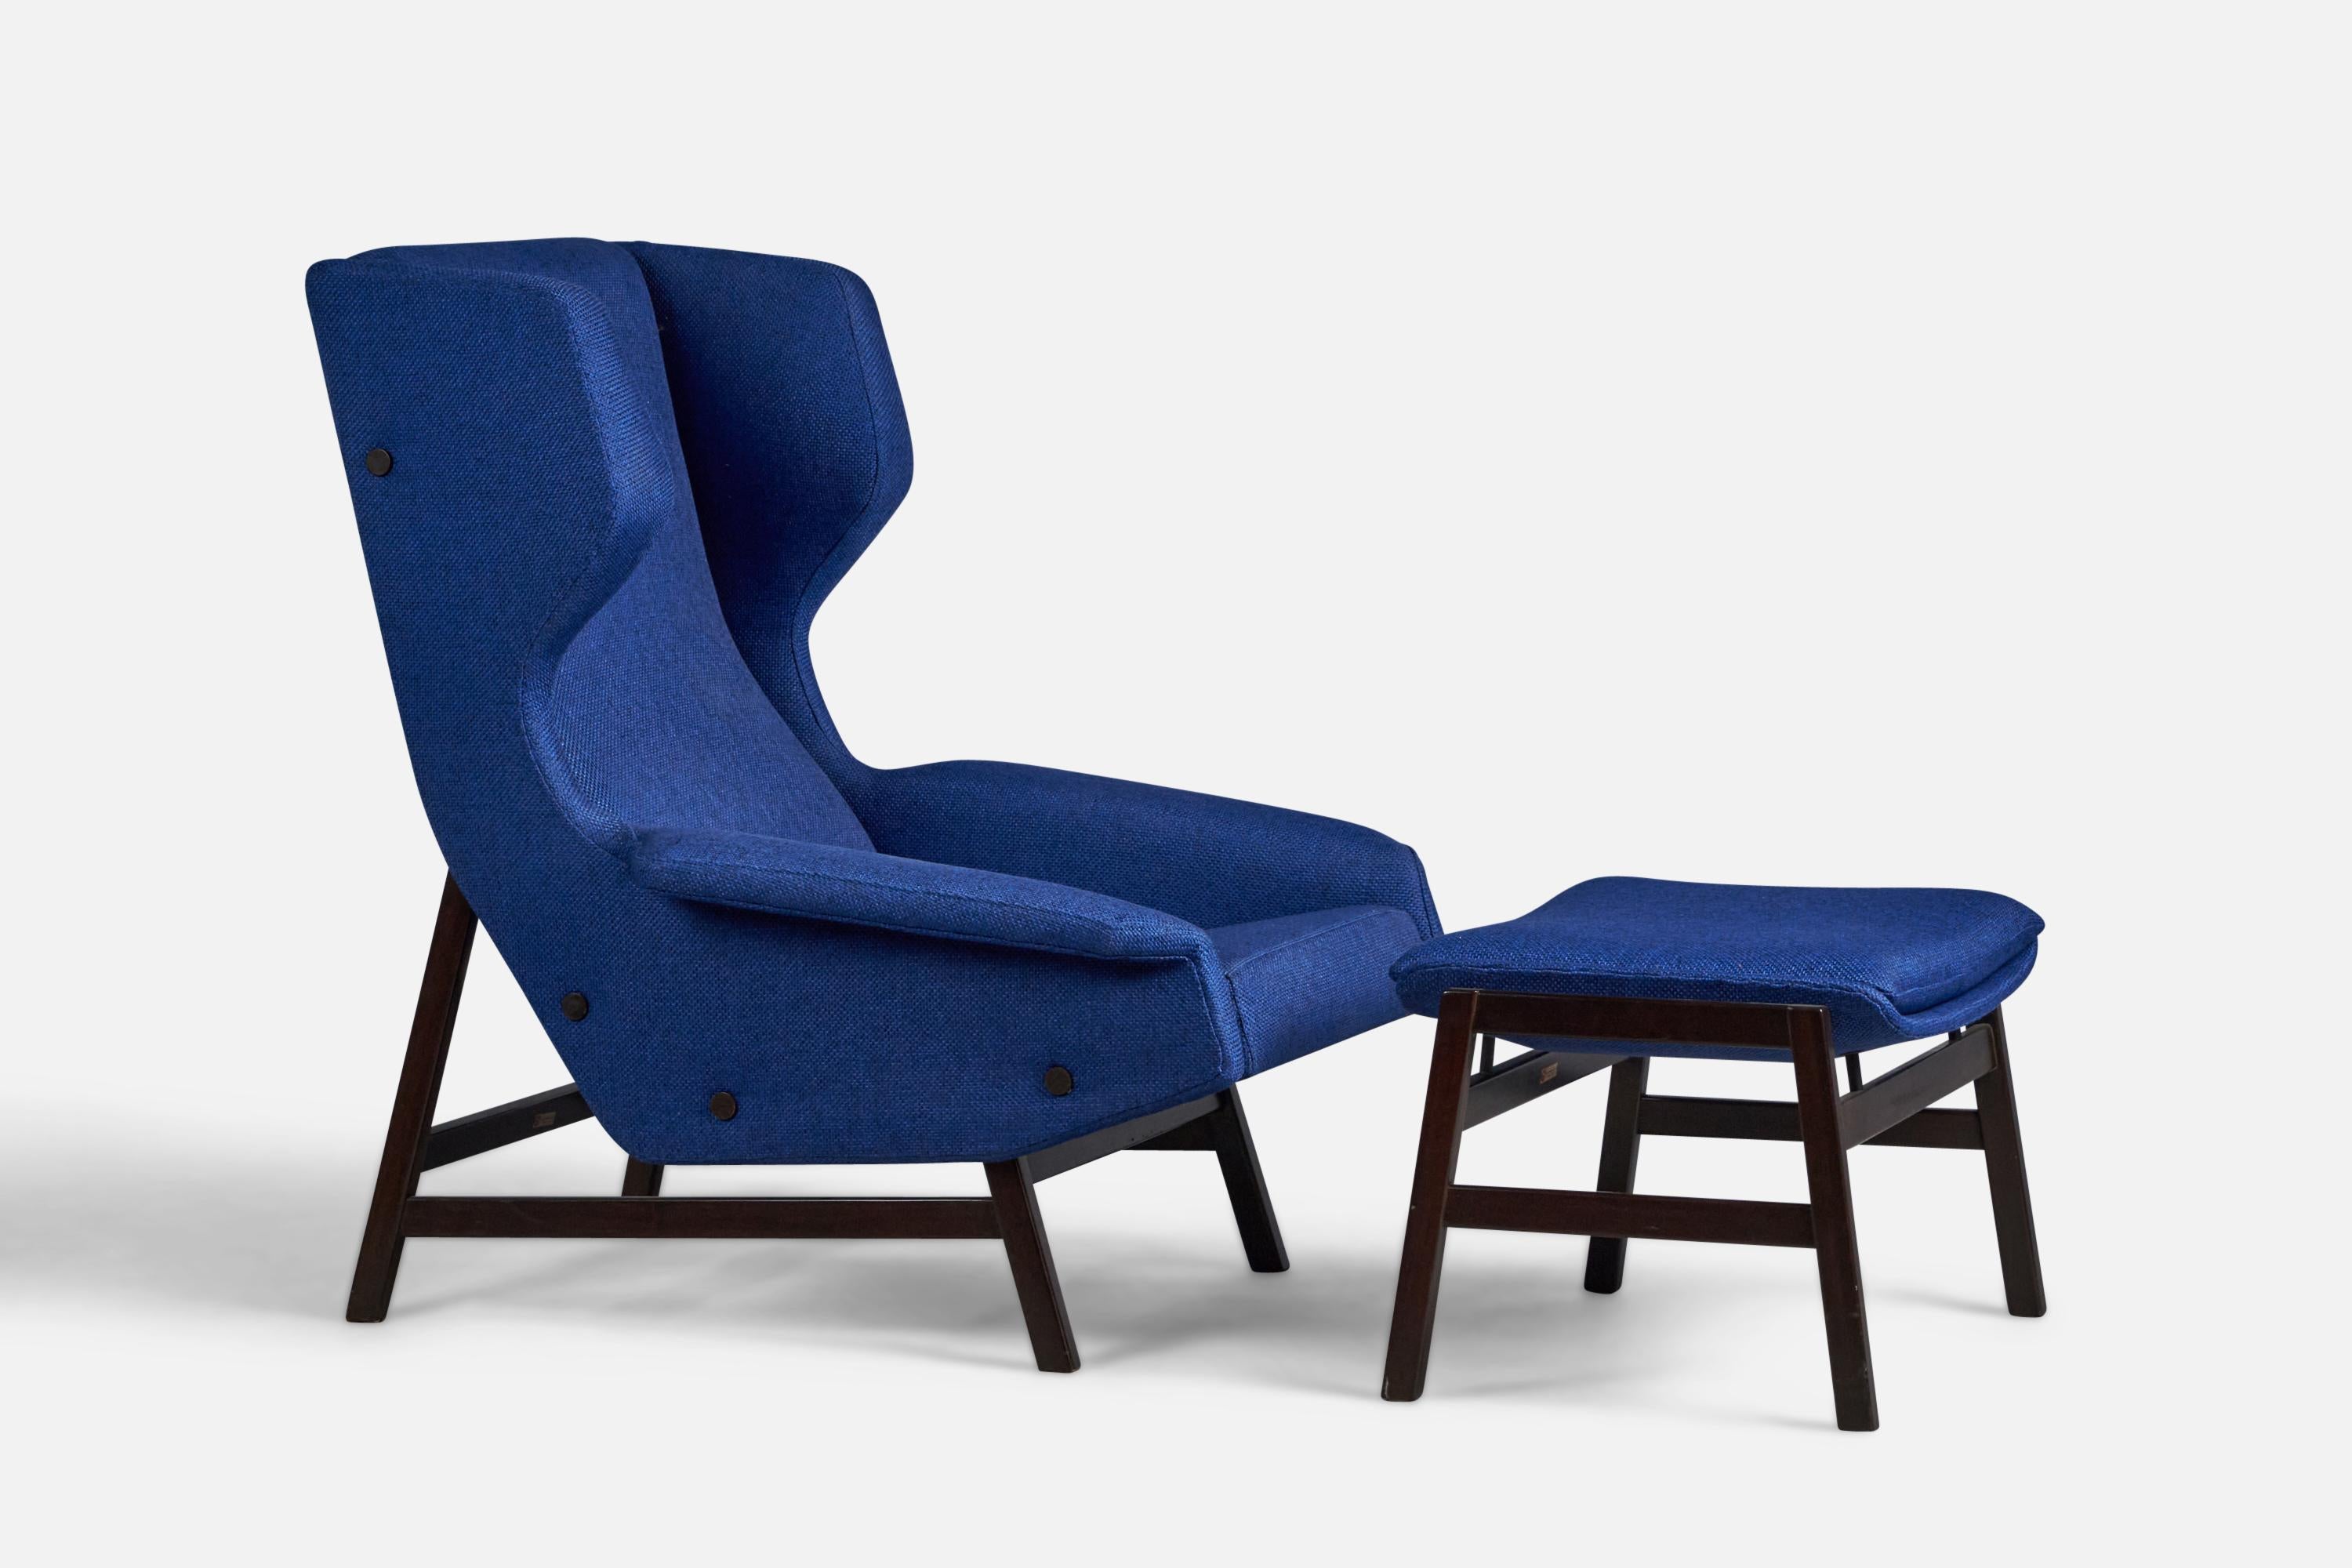 Ein Loungesessel aus blauem Stoff und dunkel gebeiztem Holz, entworfen von Gianfranco Frattini und hergestellt von Cassina, Italien, 1950er Jahre.

Sitzhöhe: 15,5